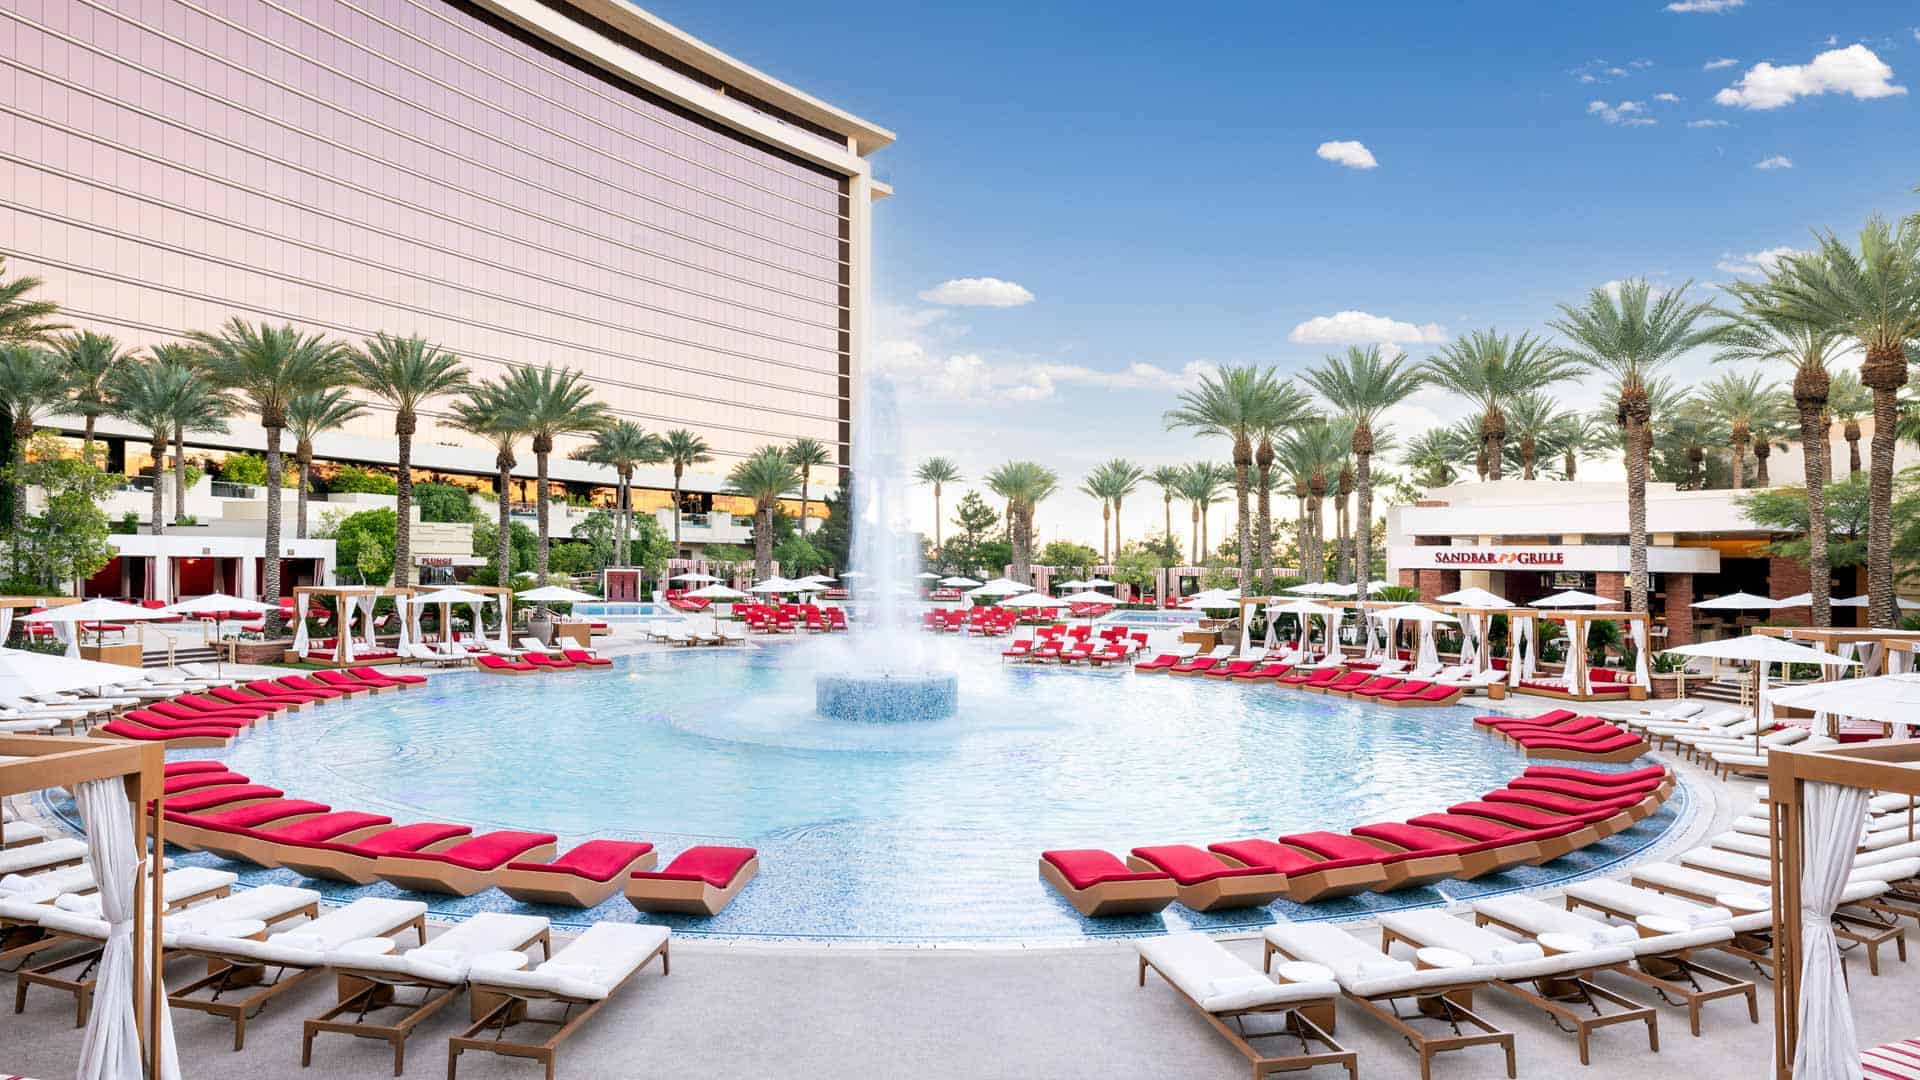 La Quinta Inn Ste Red Rock - Las Vegas - HOTEL INFO